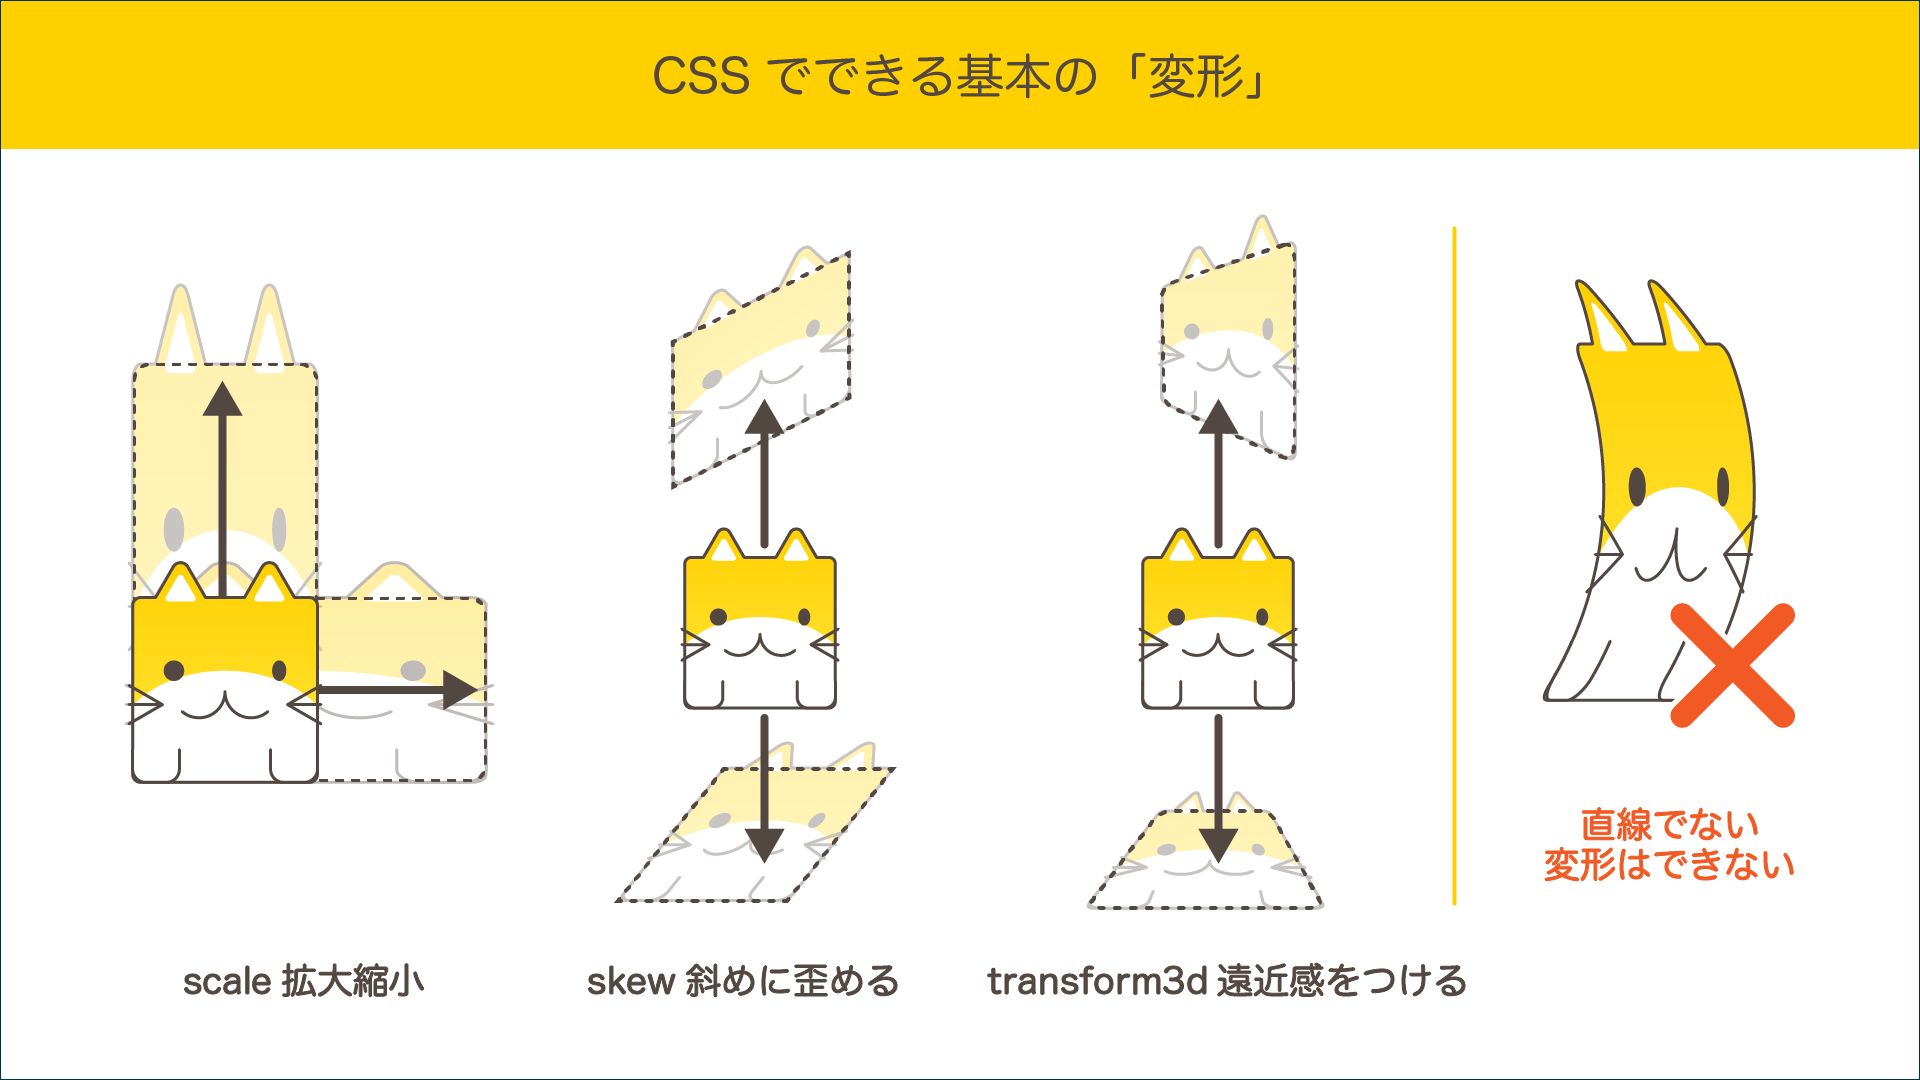 CSSでできる基本の変形の説明図